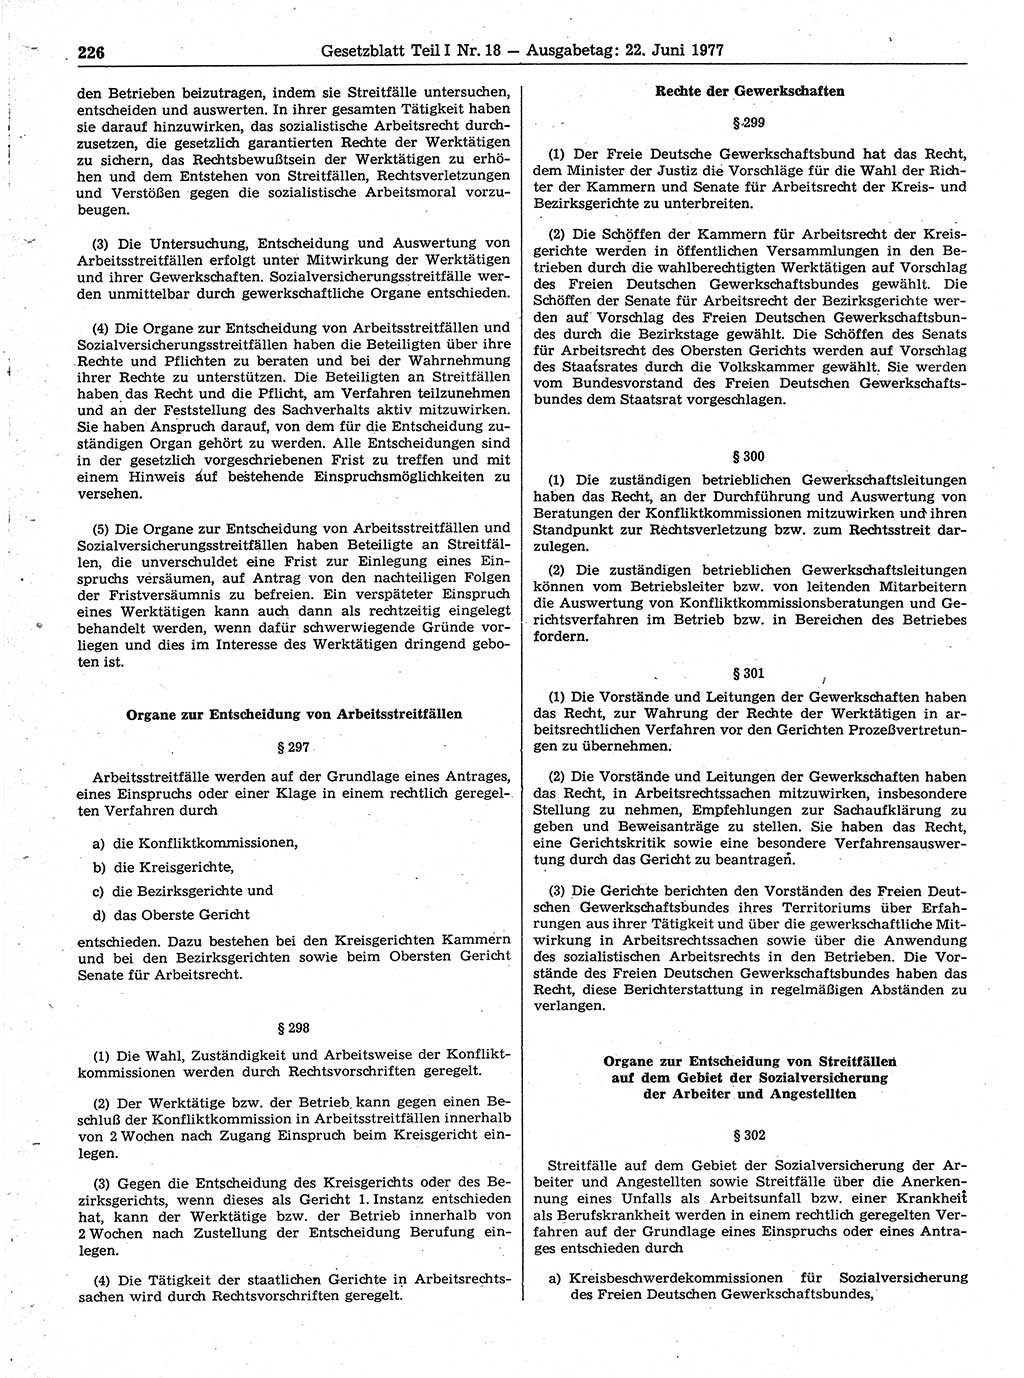 Gesetzblatt (GBl.) der Deutschen Demokratischen Republik (DDR) Teil Ⅰ 1977, Seite 226 (GBl. DDR Ⅰ 1977, S. 226)